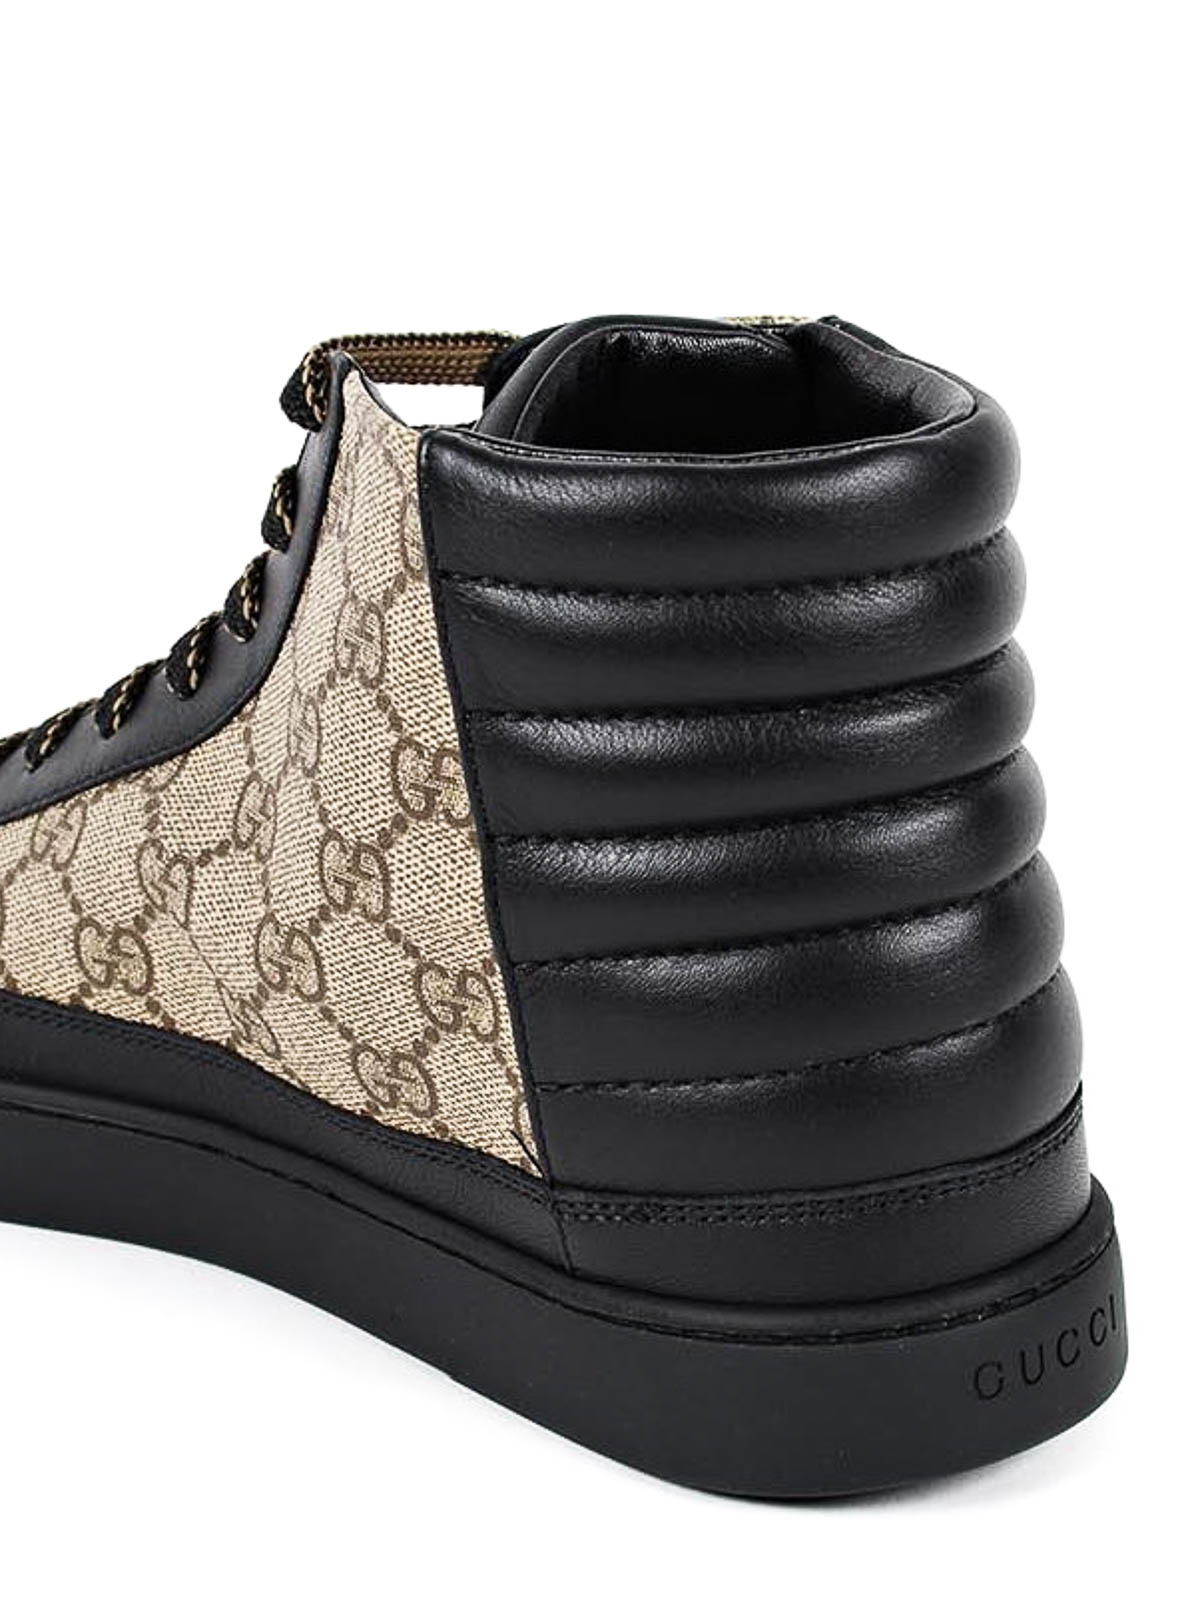 Zapatillas Gucci GG supreme leather trainers - 386740A9LN01162